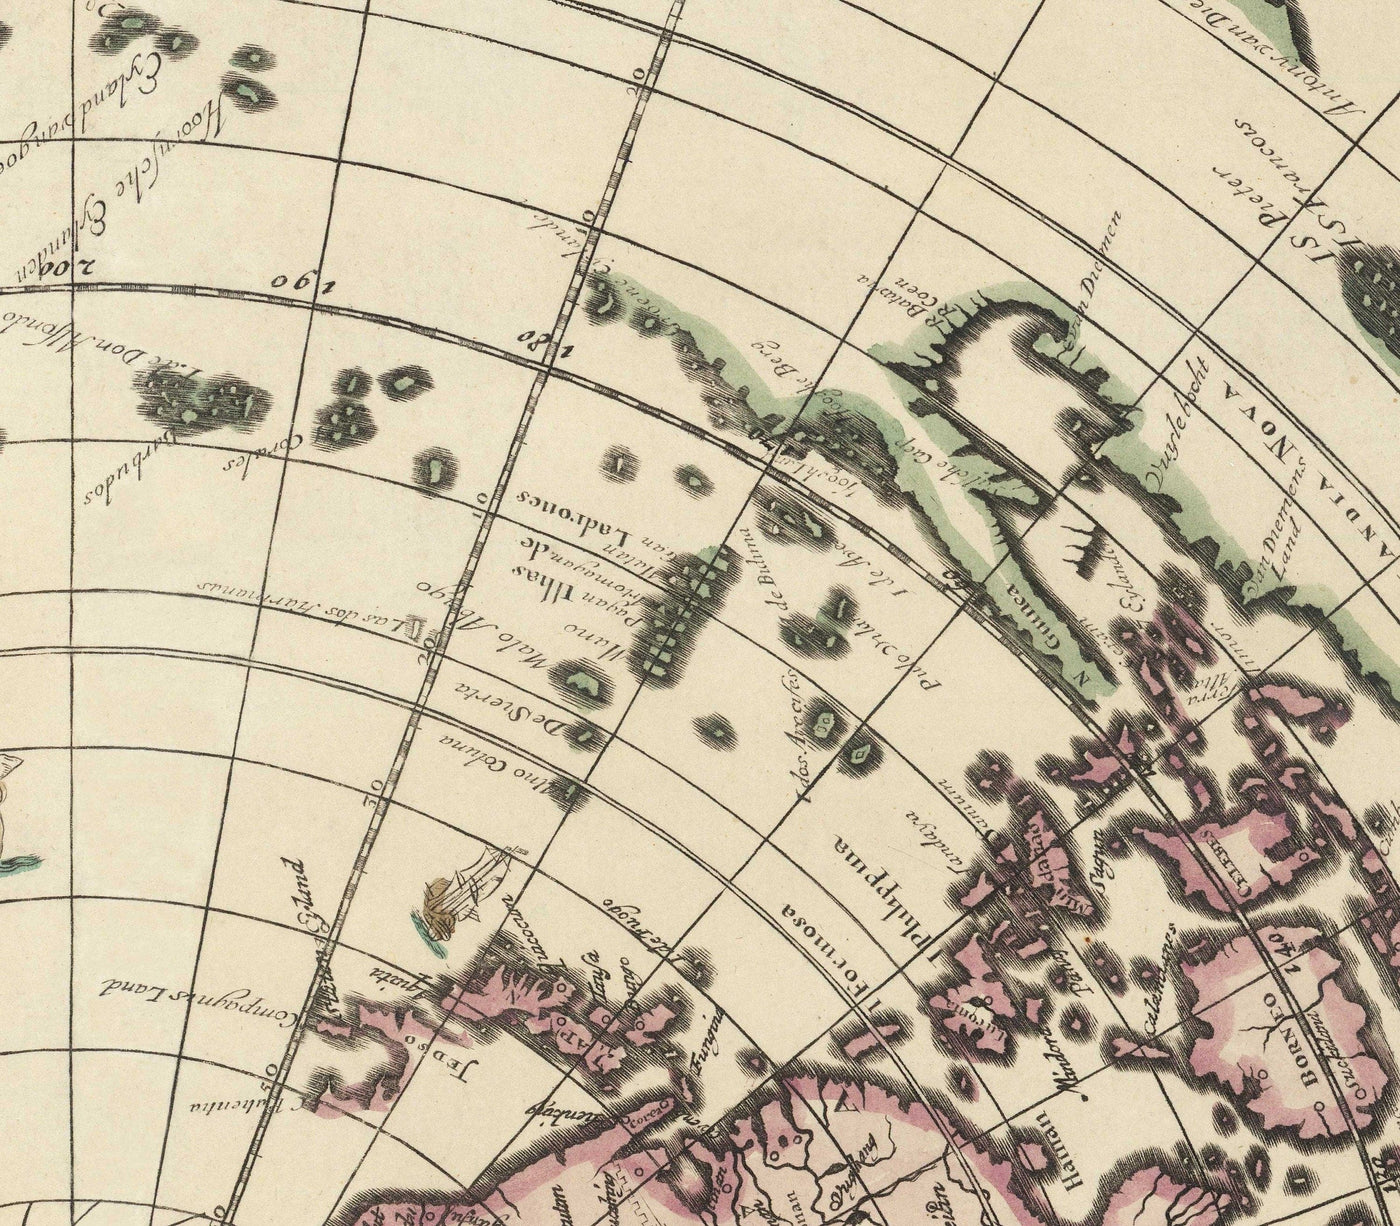 Alte Weltkarte der flachen Erde, 1696 von Jacob Harrewyn - Insel Kalifornien, Putten - Polar-Azimutale Projektion